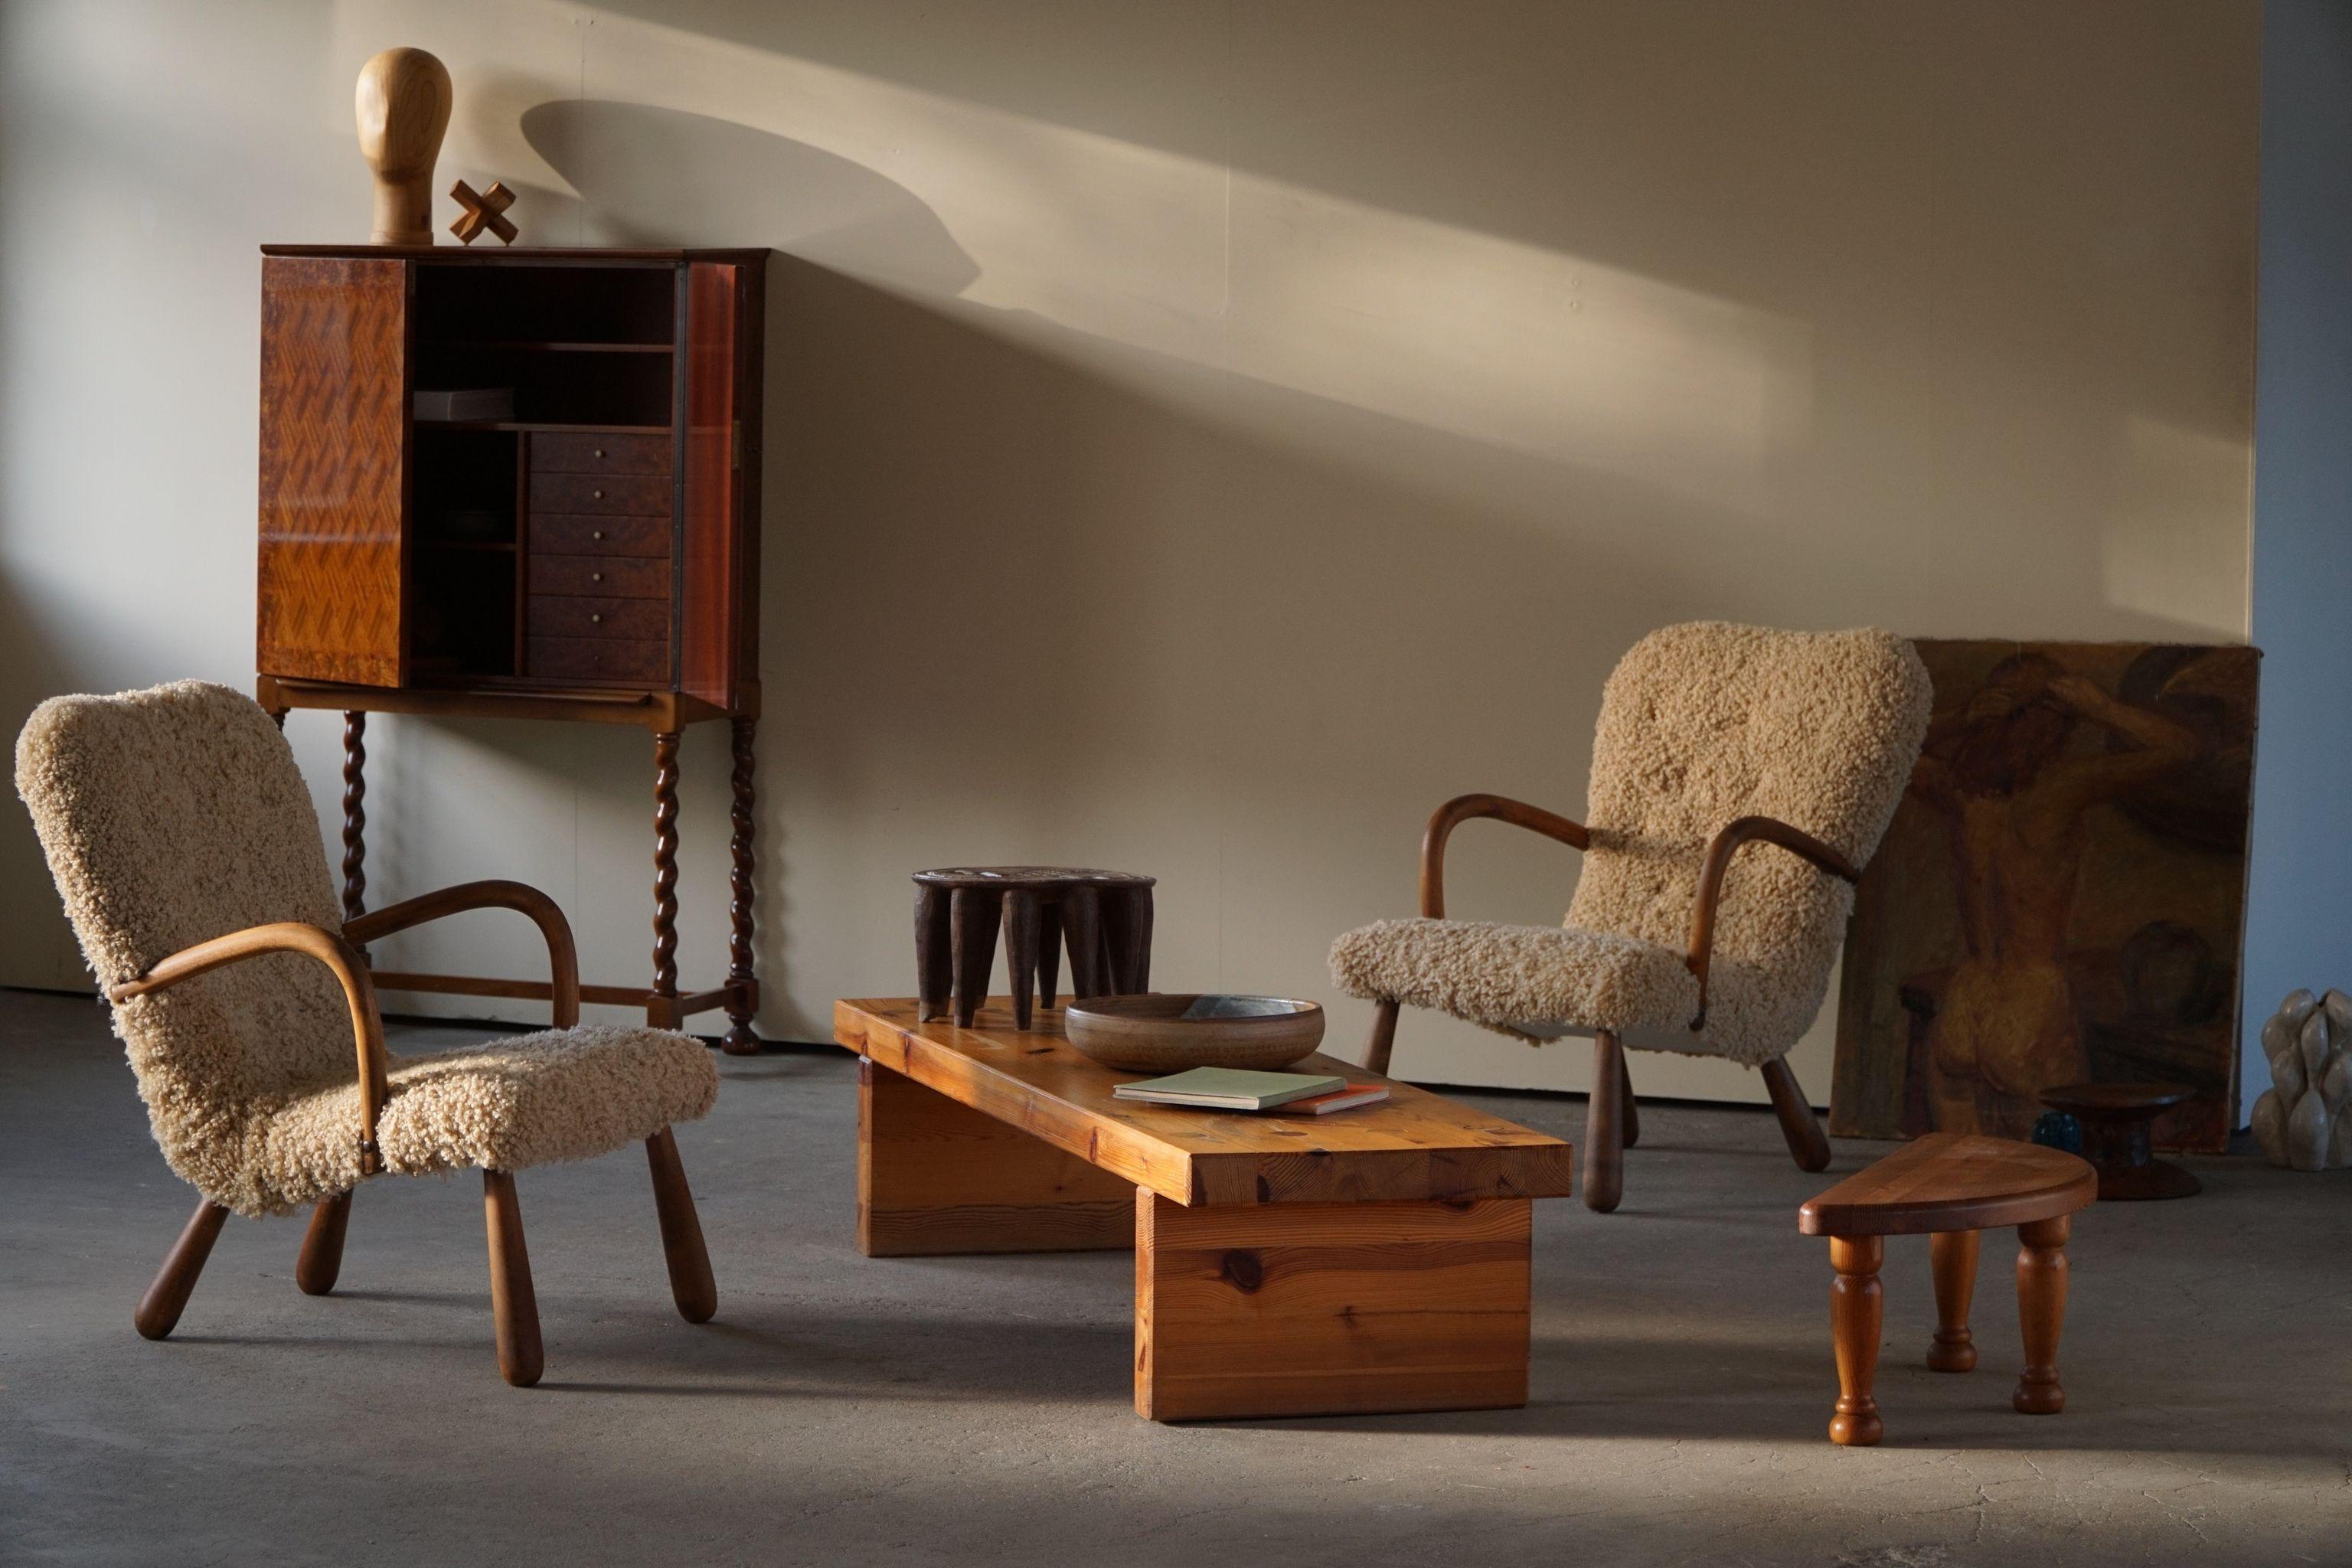 Das erstaunlichste Paar von Muschelsesseln im Stil von Arnold Madsen. 
Diese Stühle wurden in den 1950er Jahren von der Skive Møbelfabrik hergestellt und mit Respekt vor ihrer Geschichte restauriert. Neu gepolstert mit hochwertiger Lammfellwolle,